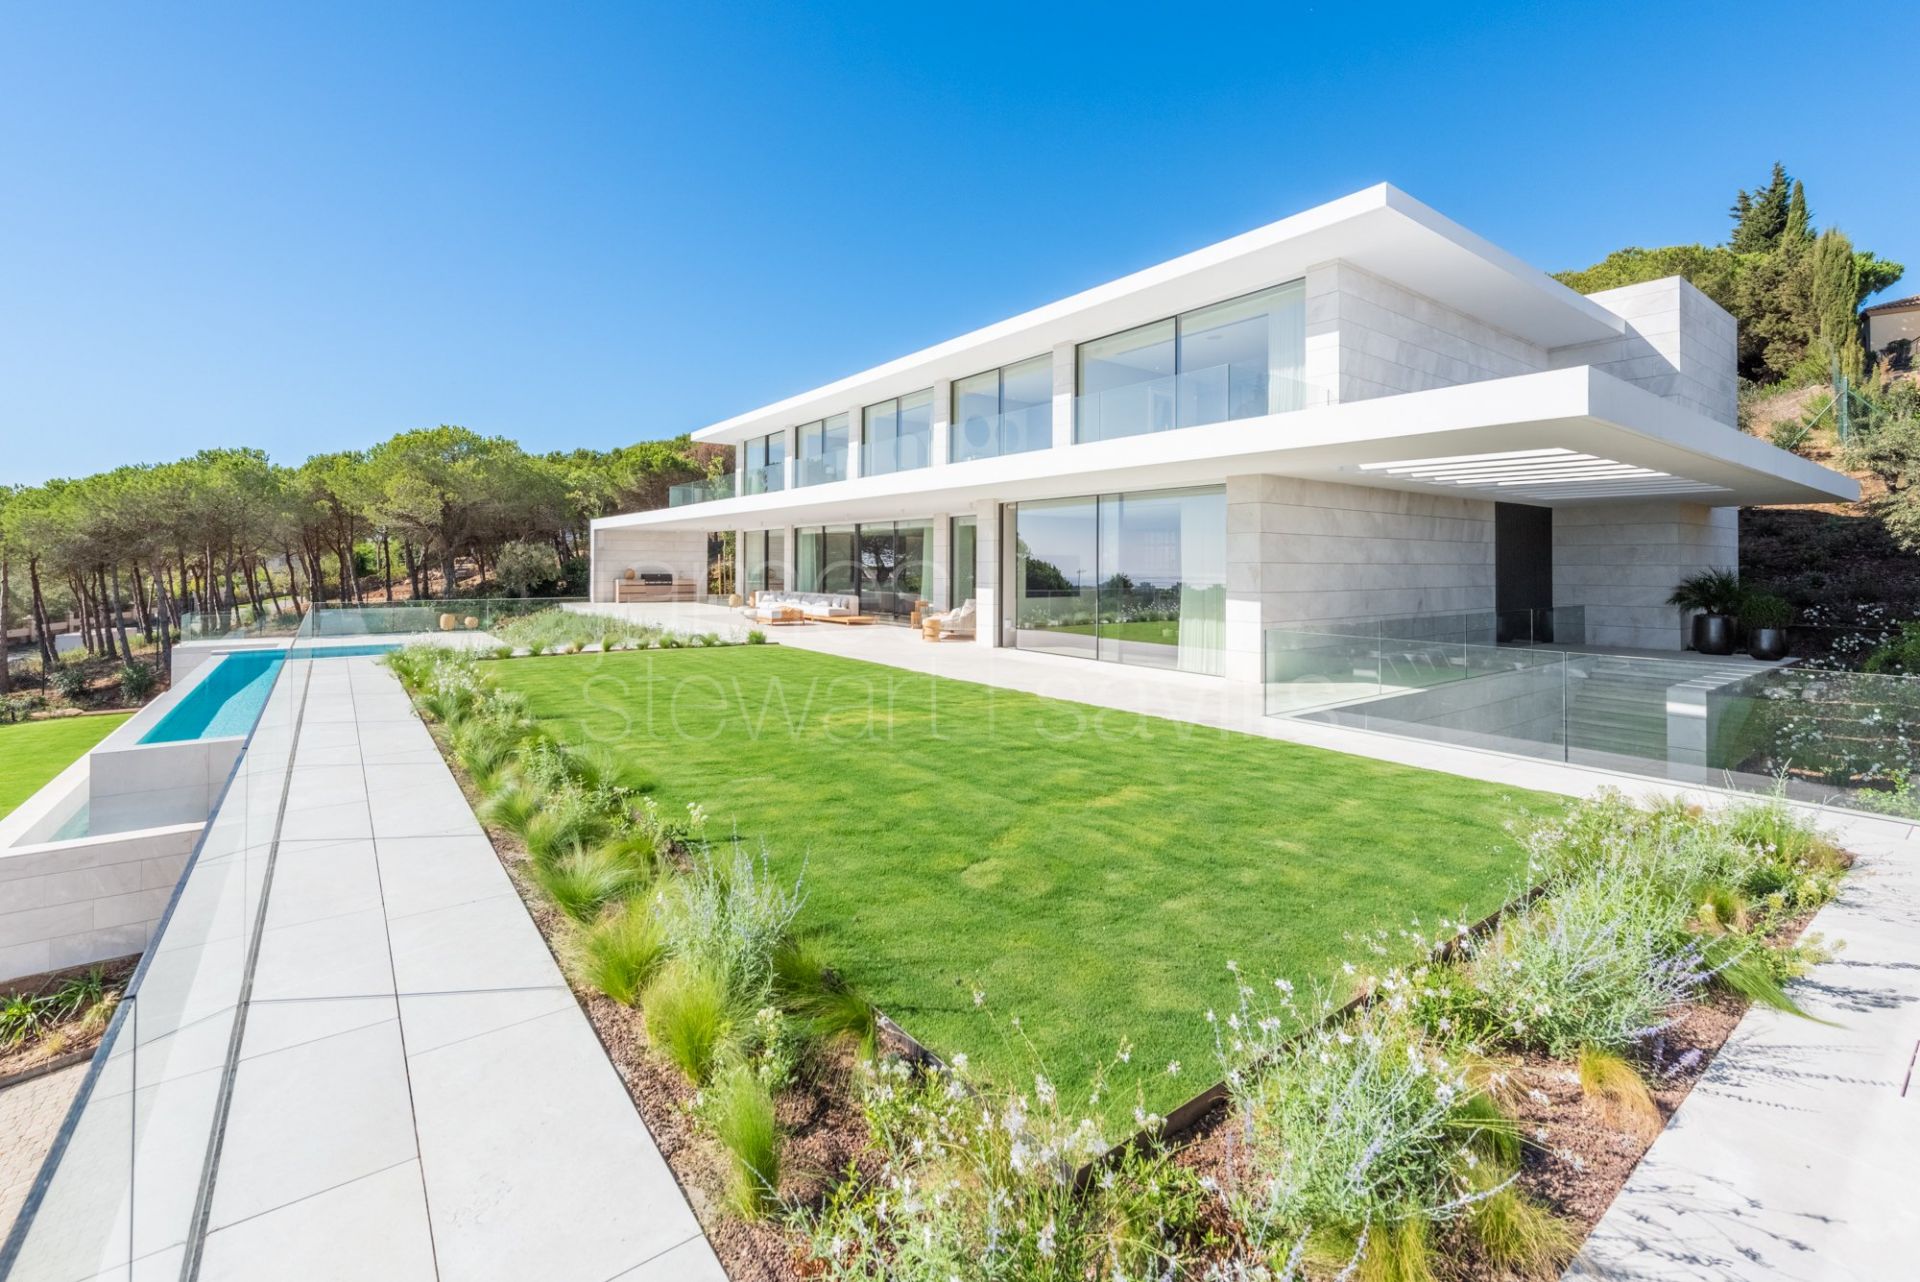 LAS ALAMANDAS - Villa a estrenar en zona Almenara, Sotogrande, con fabulosas vistas al golf y al mar